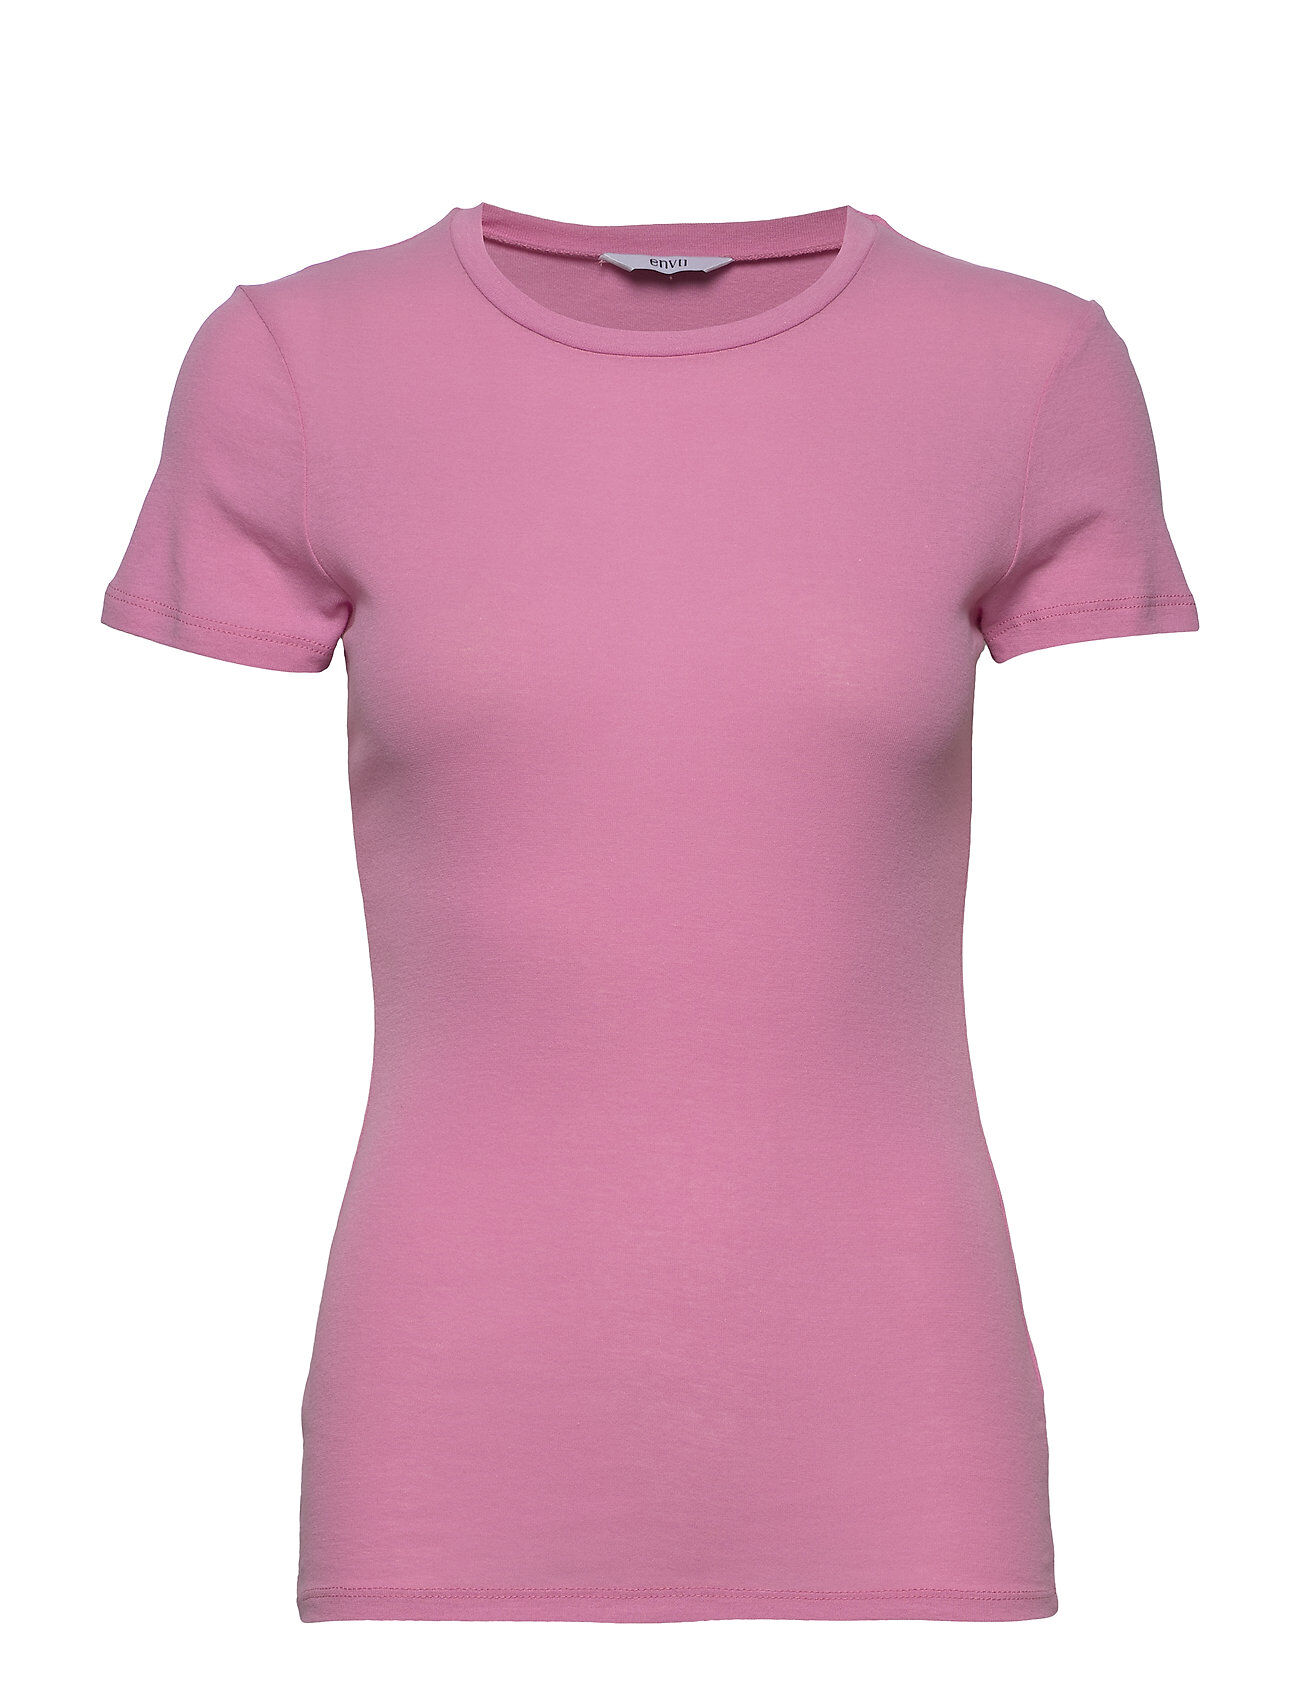 Envii Envelda Ss Tee 5328 T-shirts & Tops Short-sleeved Rosa Envii